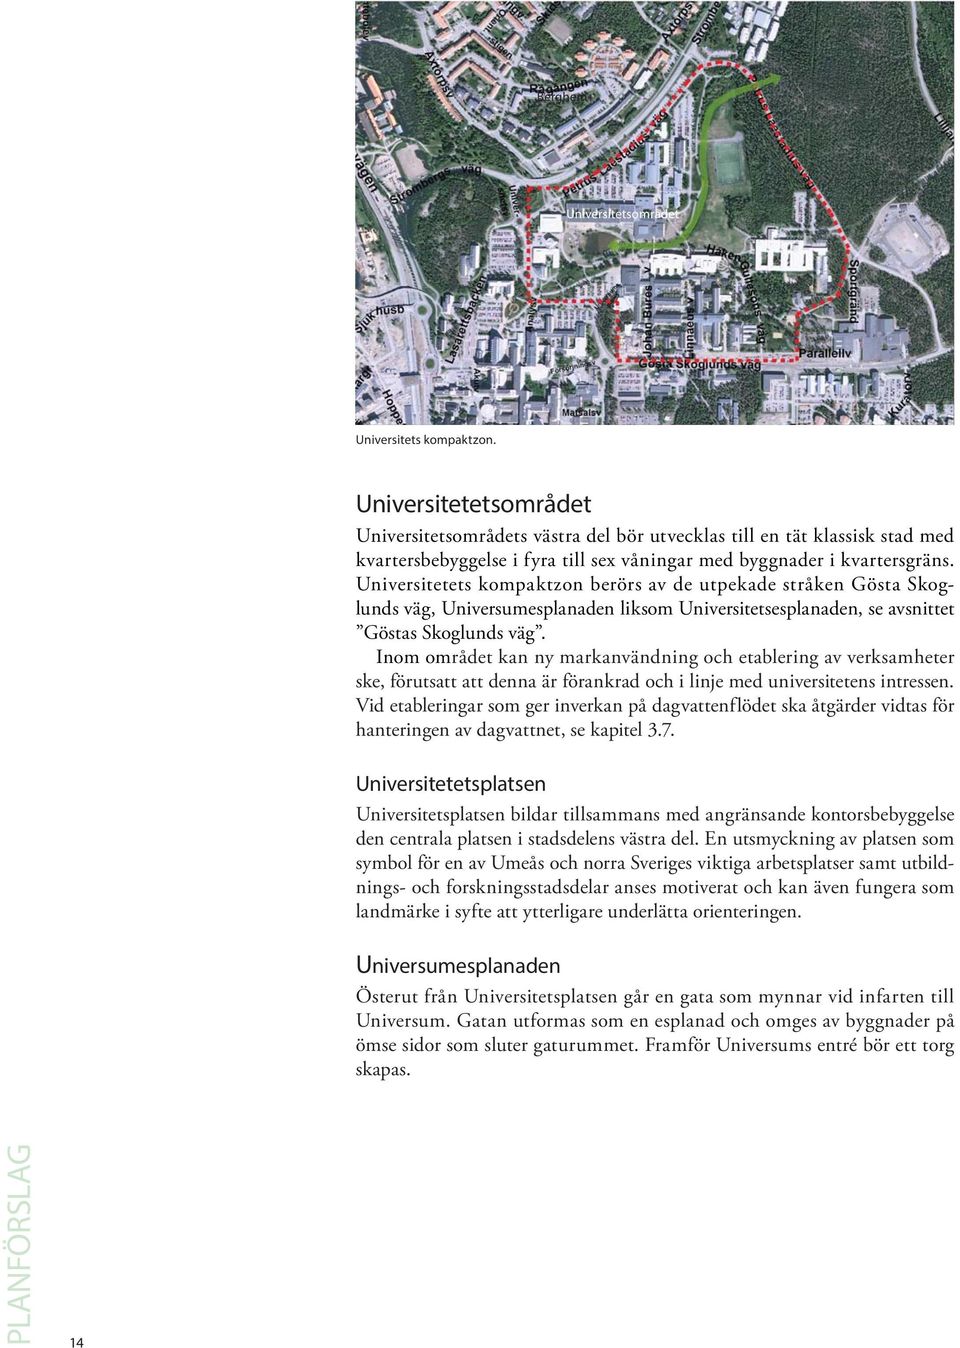 Universitetets kompaktzon berörs av de utpekade stråken Gösta Skoglunds väg, Universumesplanaden liksom Universitetsesplanaden, se avsnittet Göstas Skoglunds väg.